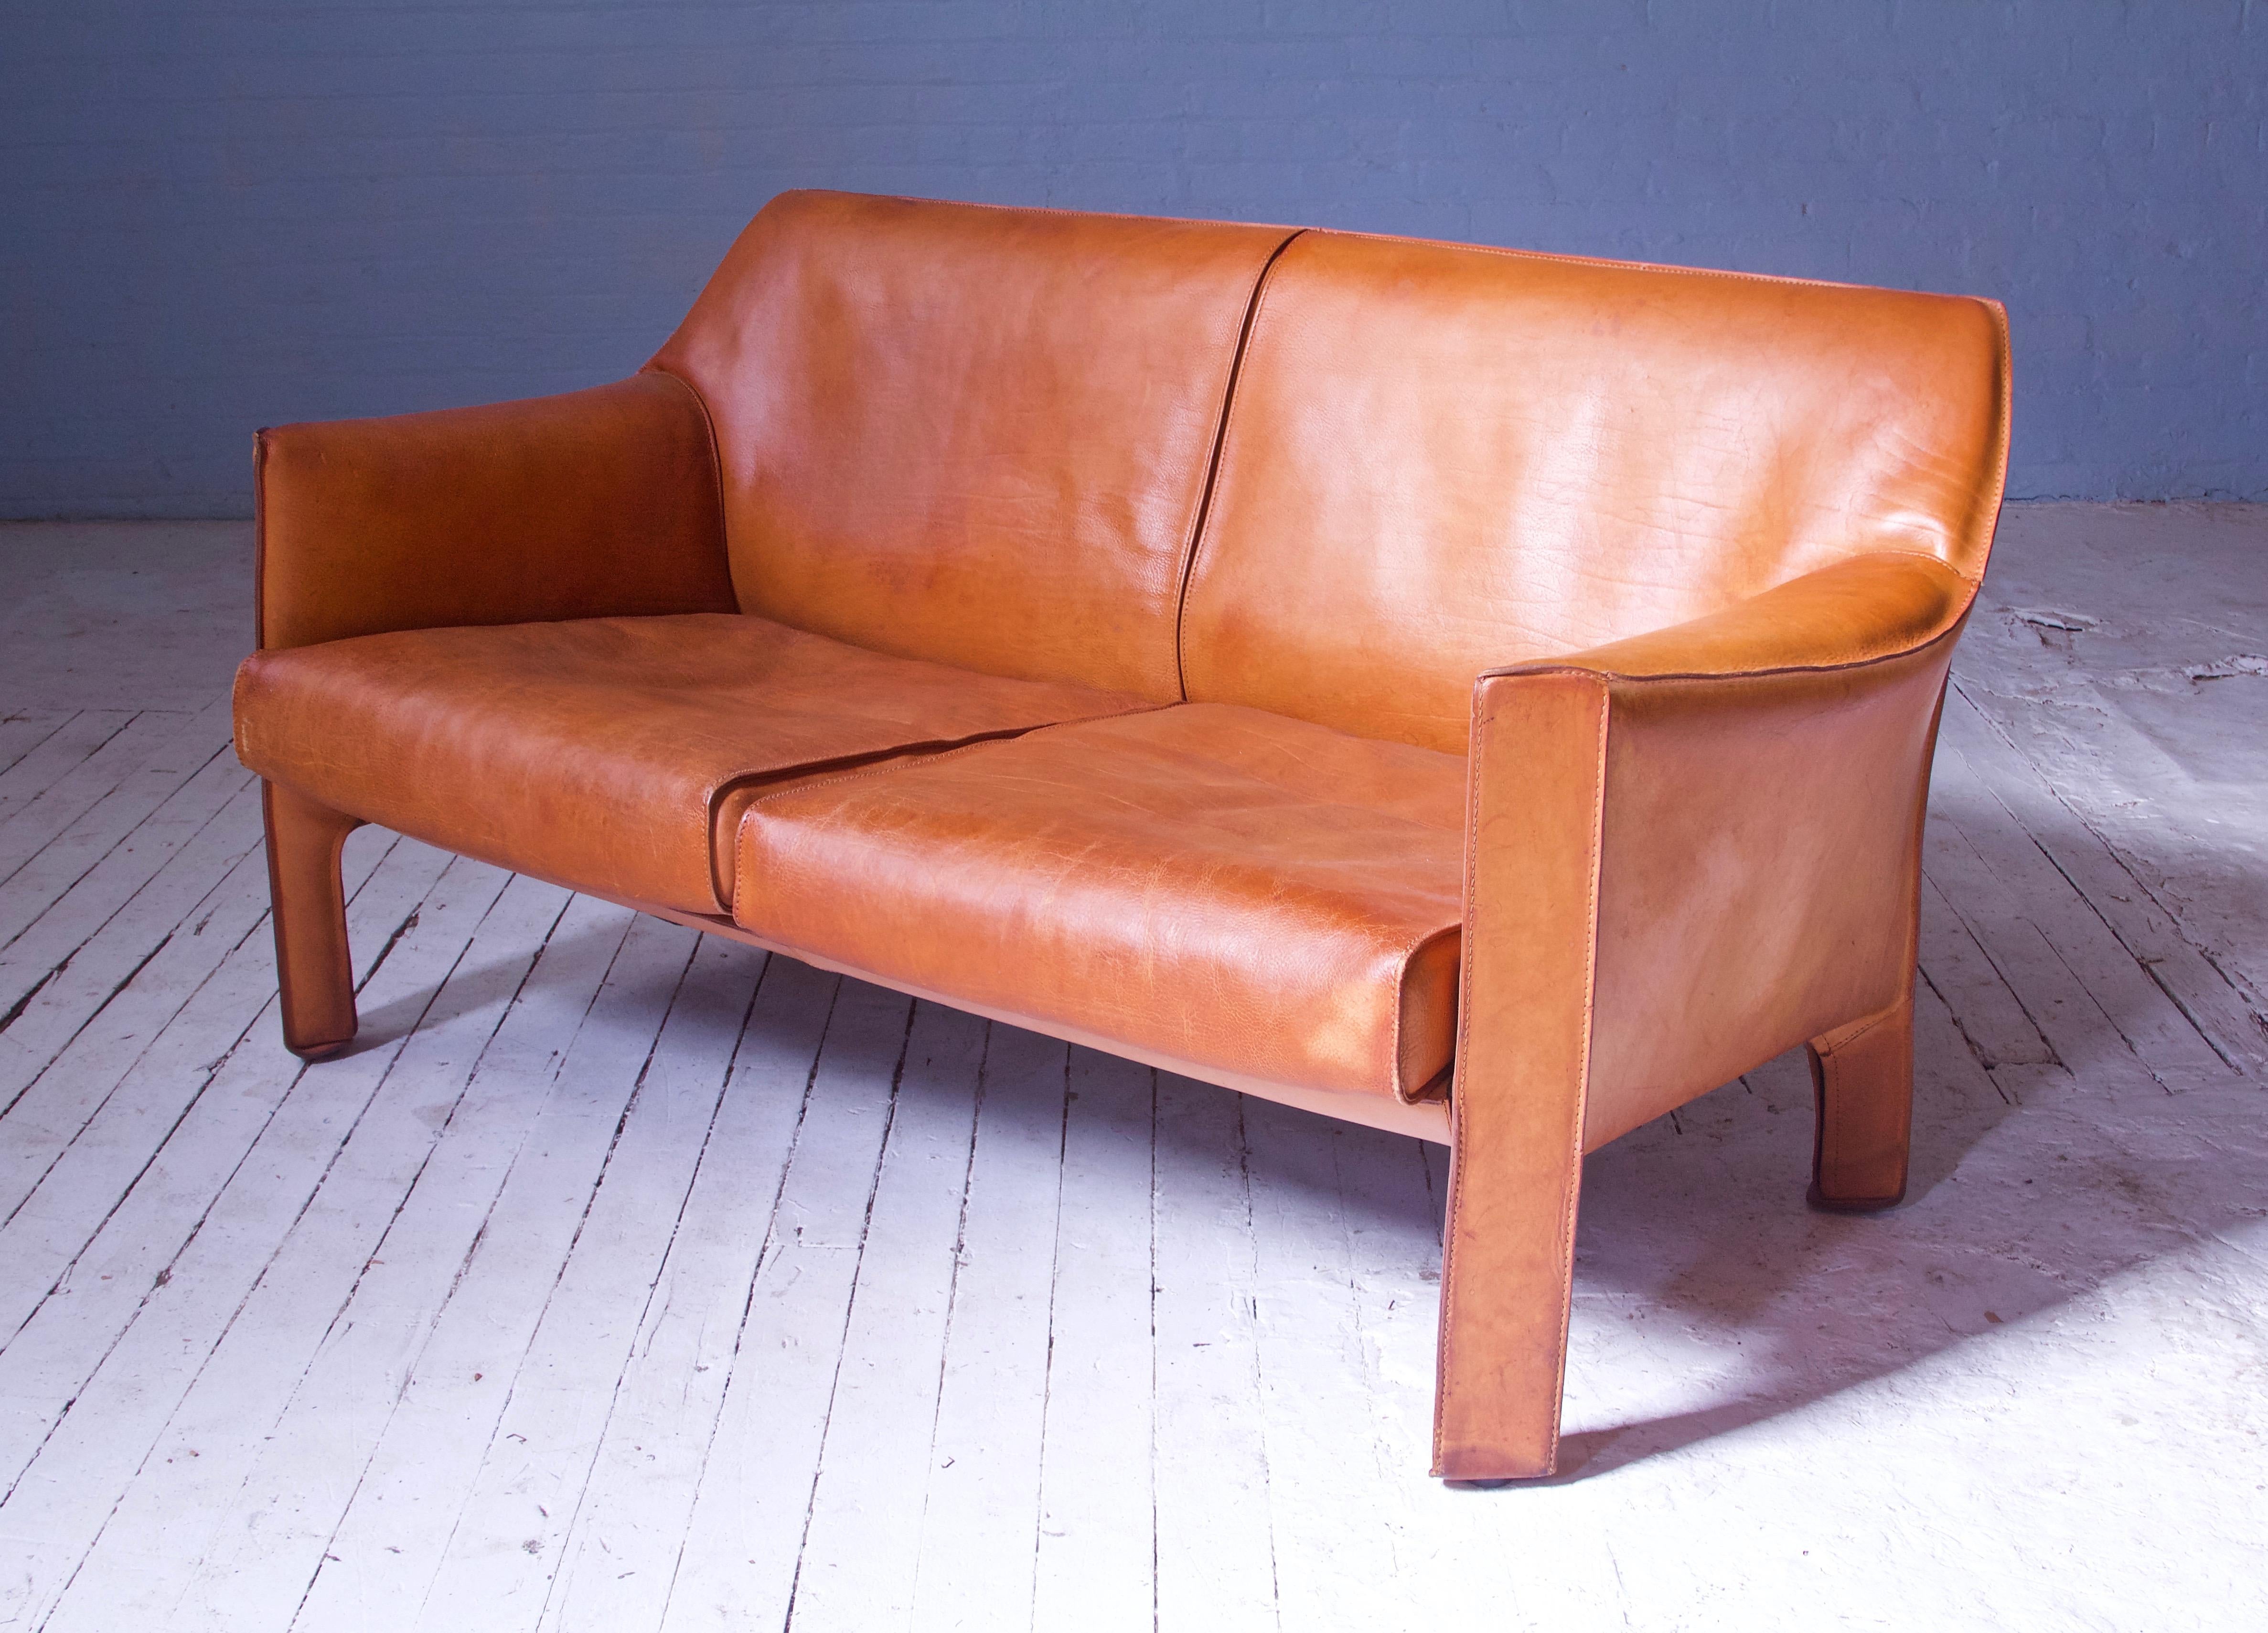 Das Zweisitzer-Sofa 415 cab im Vintage-Stil aus cognacfarbenem Leder von Mario Bellini ist ein unglaubliches Stück Sitzdesign. Größer und voluminöser als das Vorgängermodell 414:: stellt die Linie 415 - die letzte der CAB-Designs - den Höhepunkt von